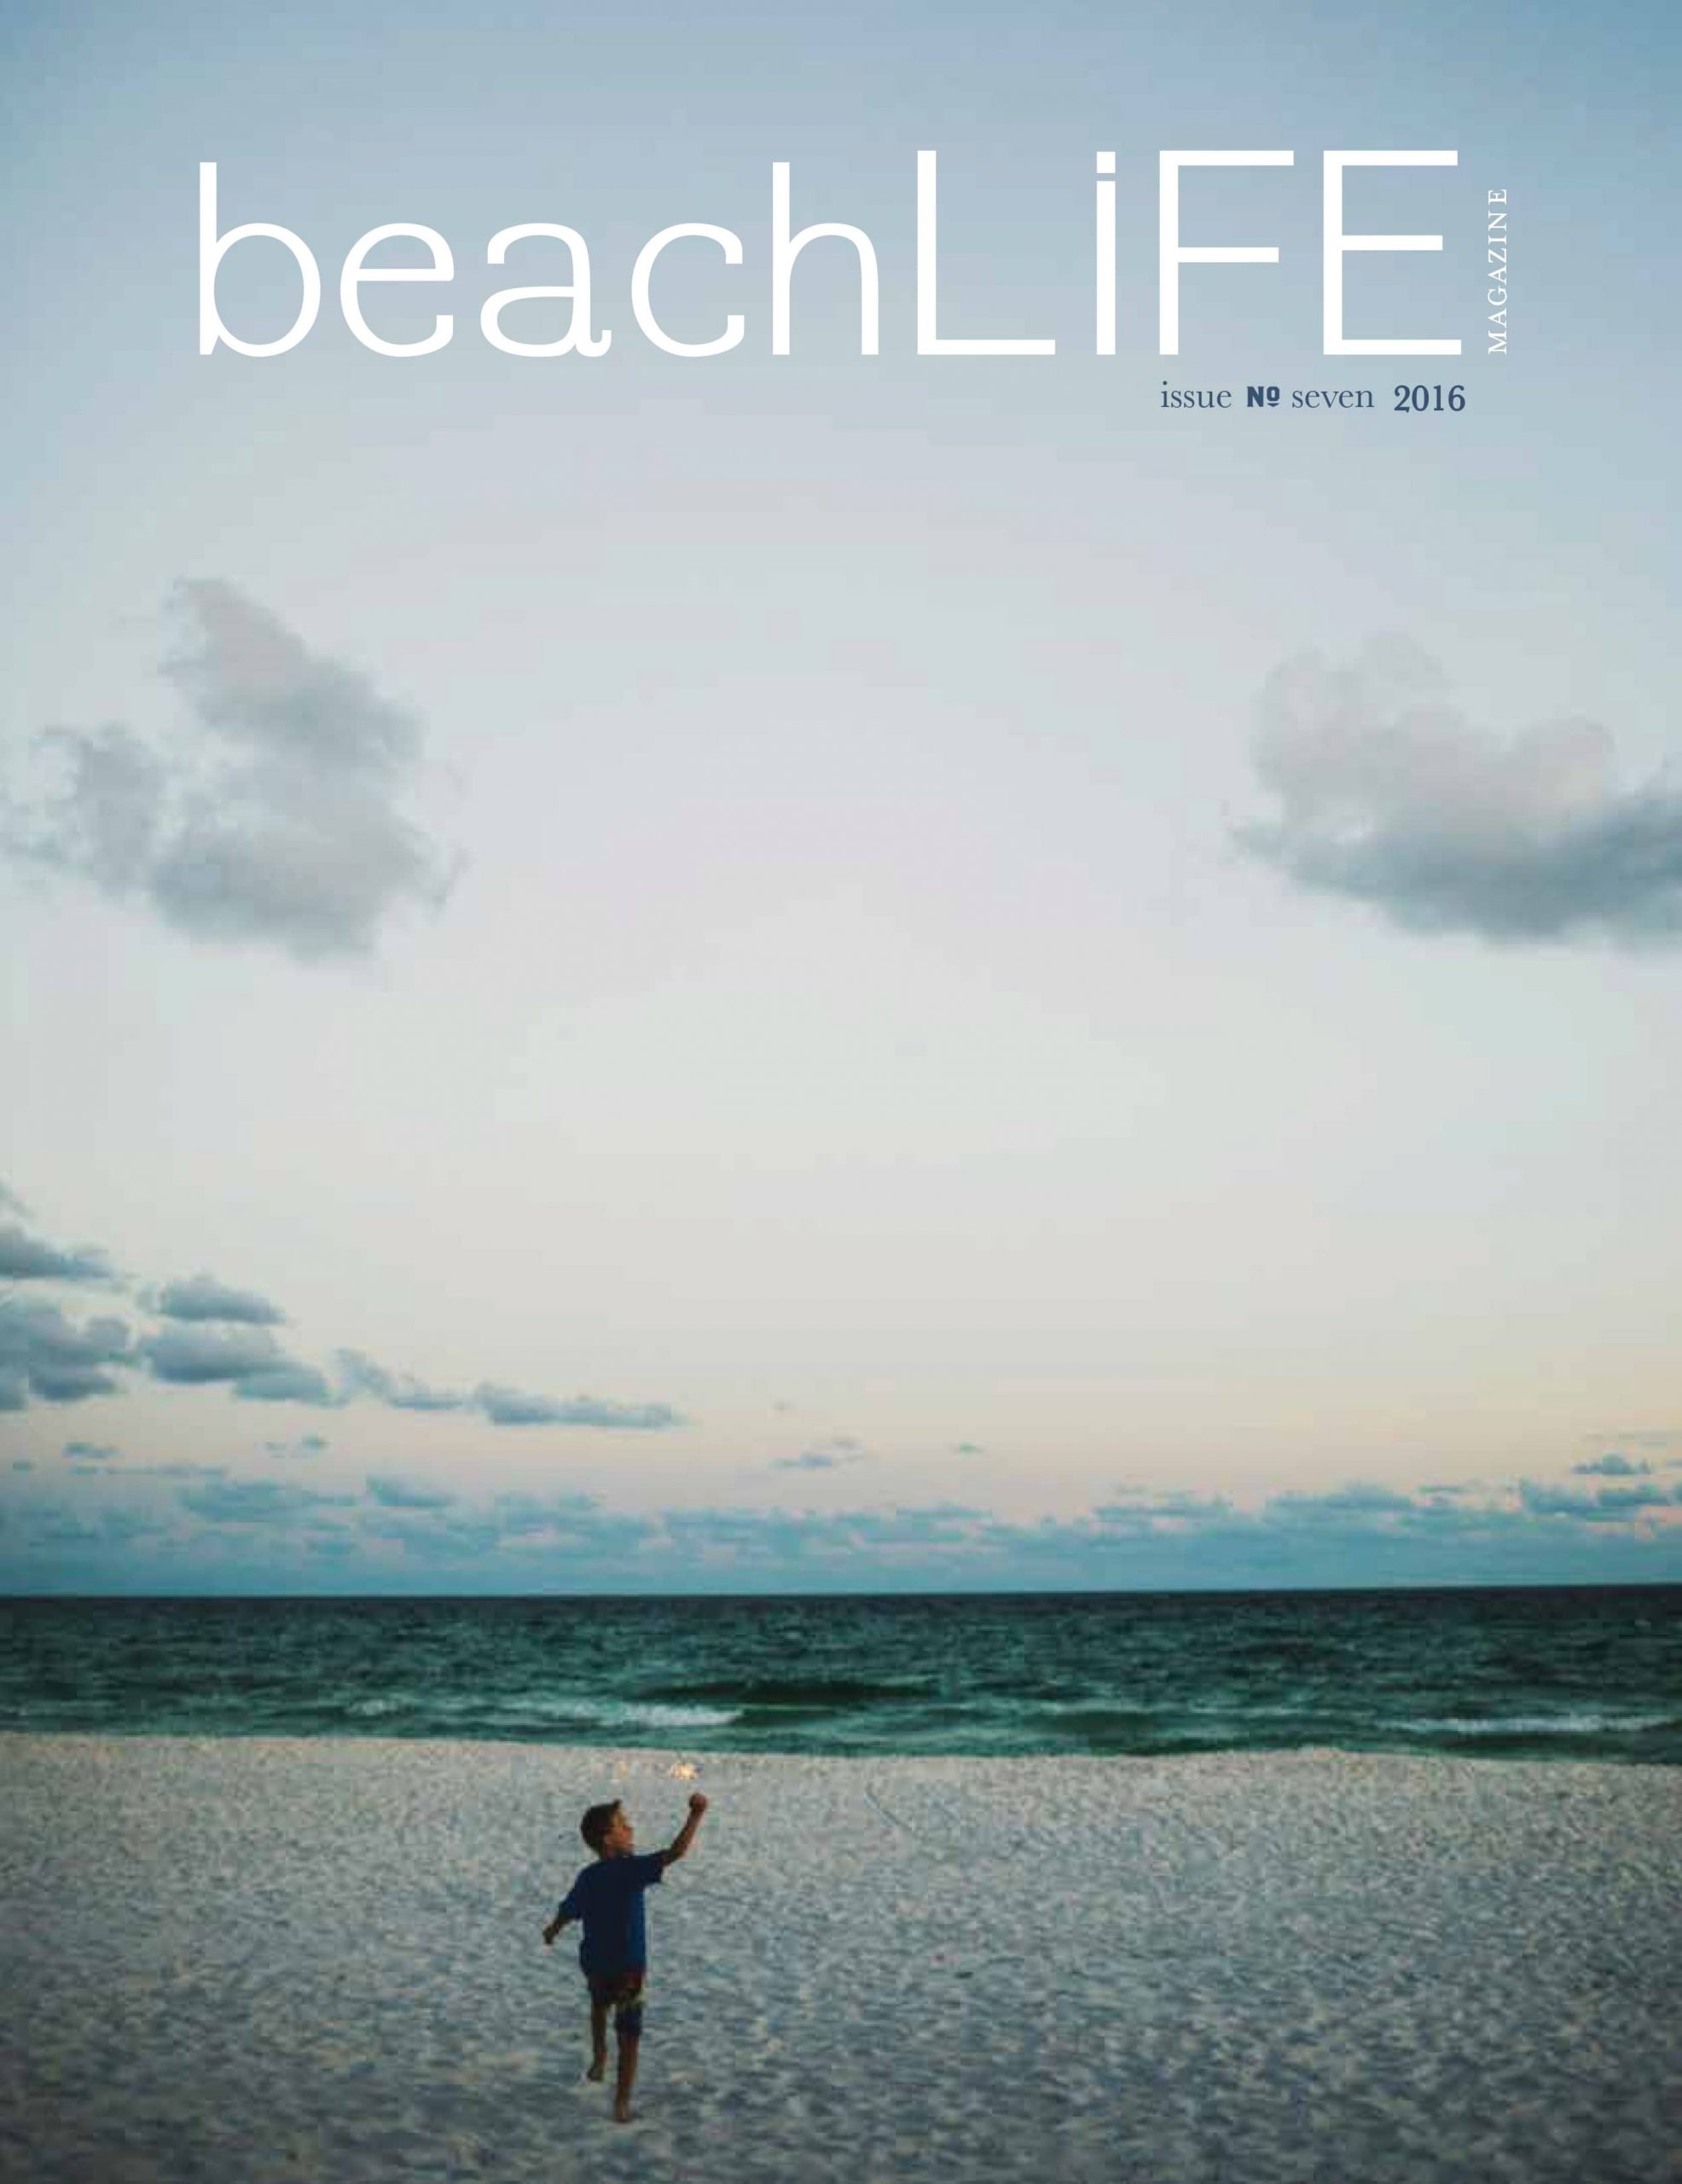 BeachLiFE 2016